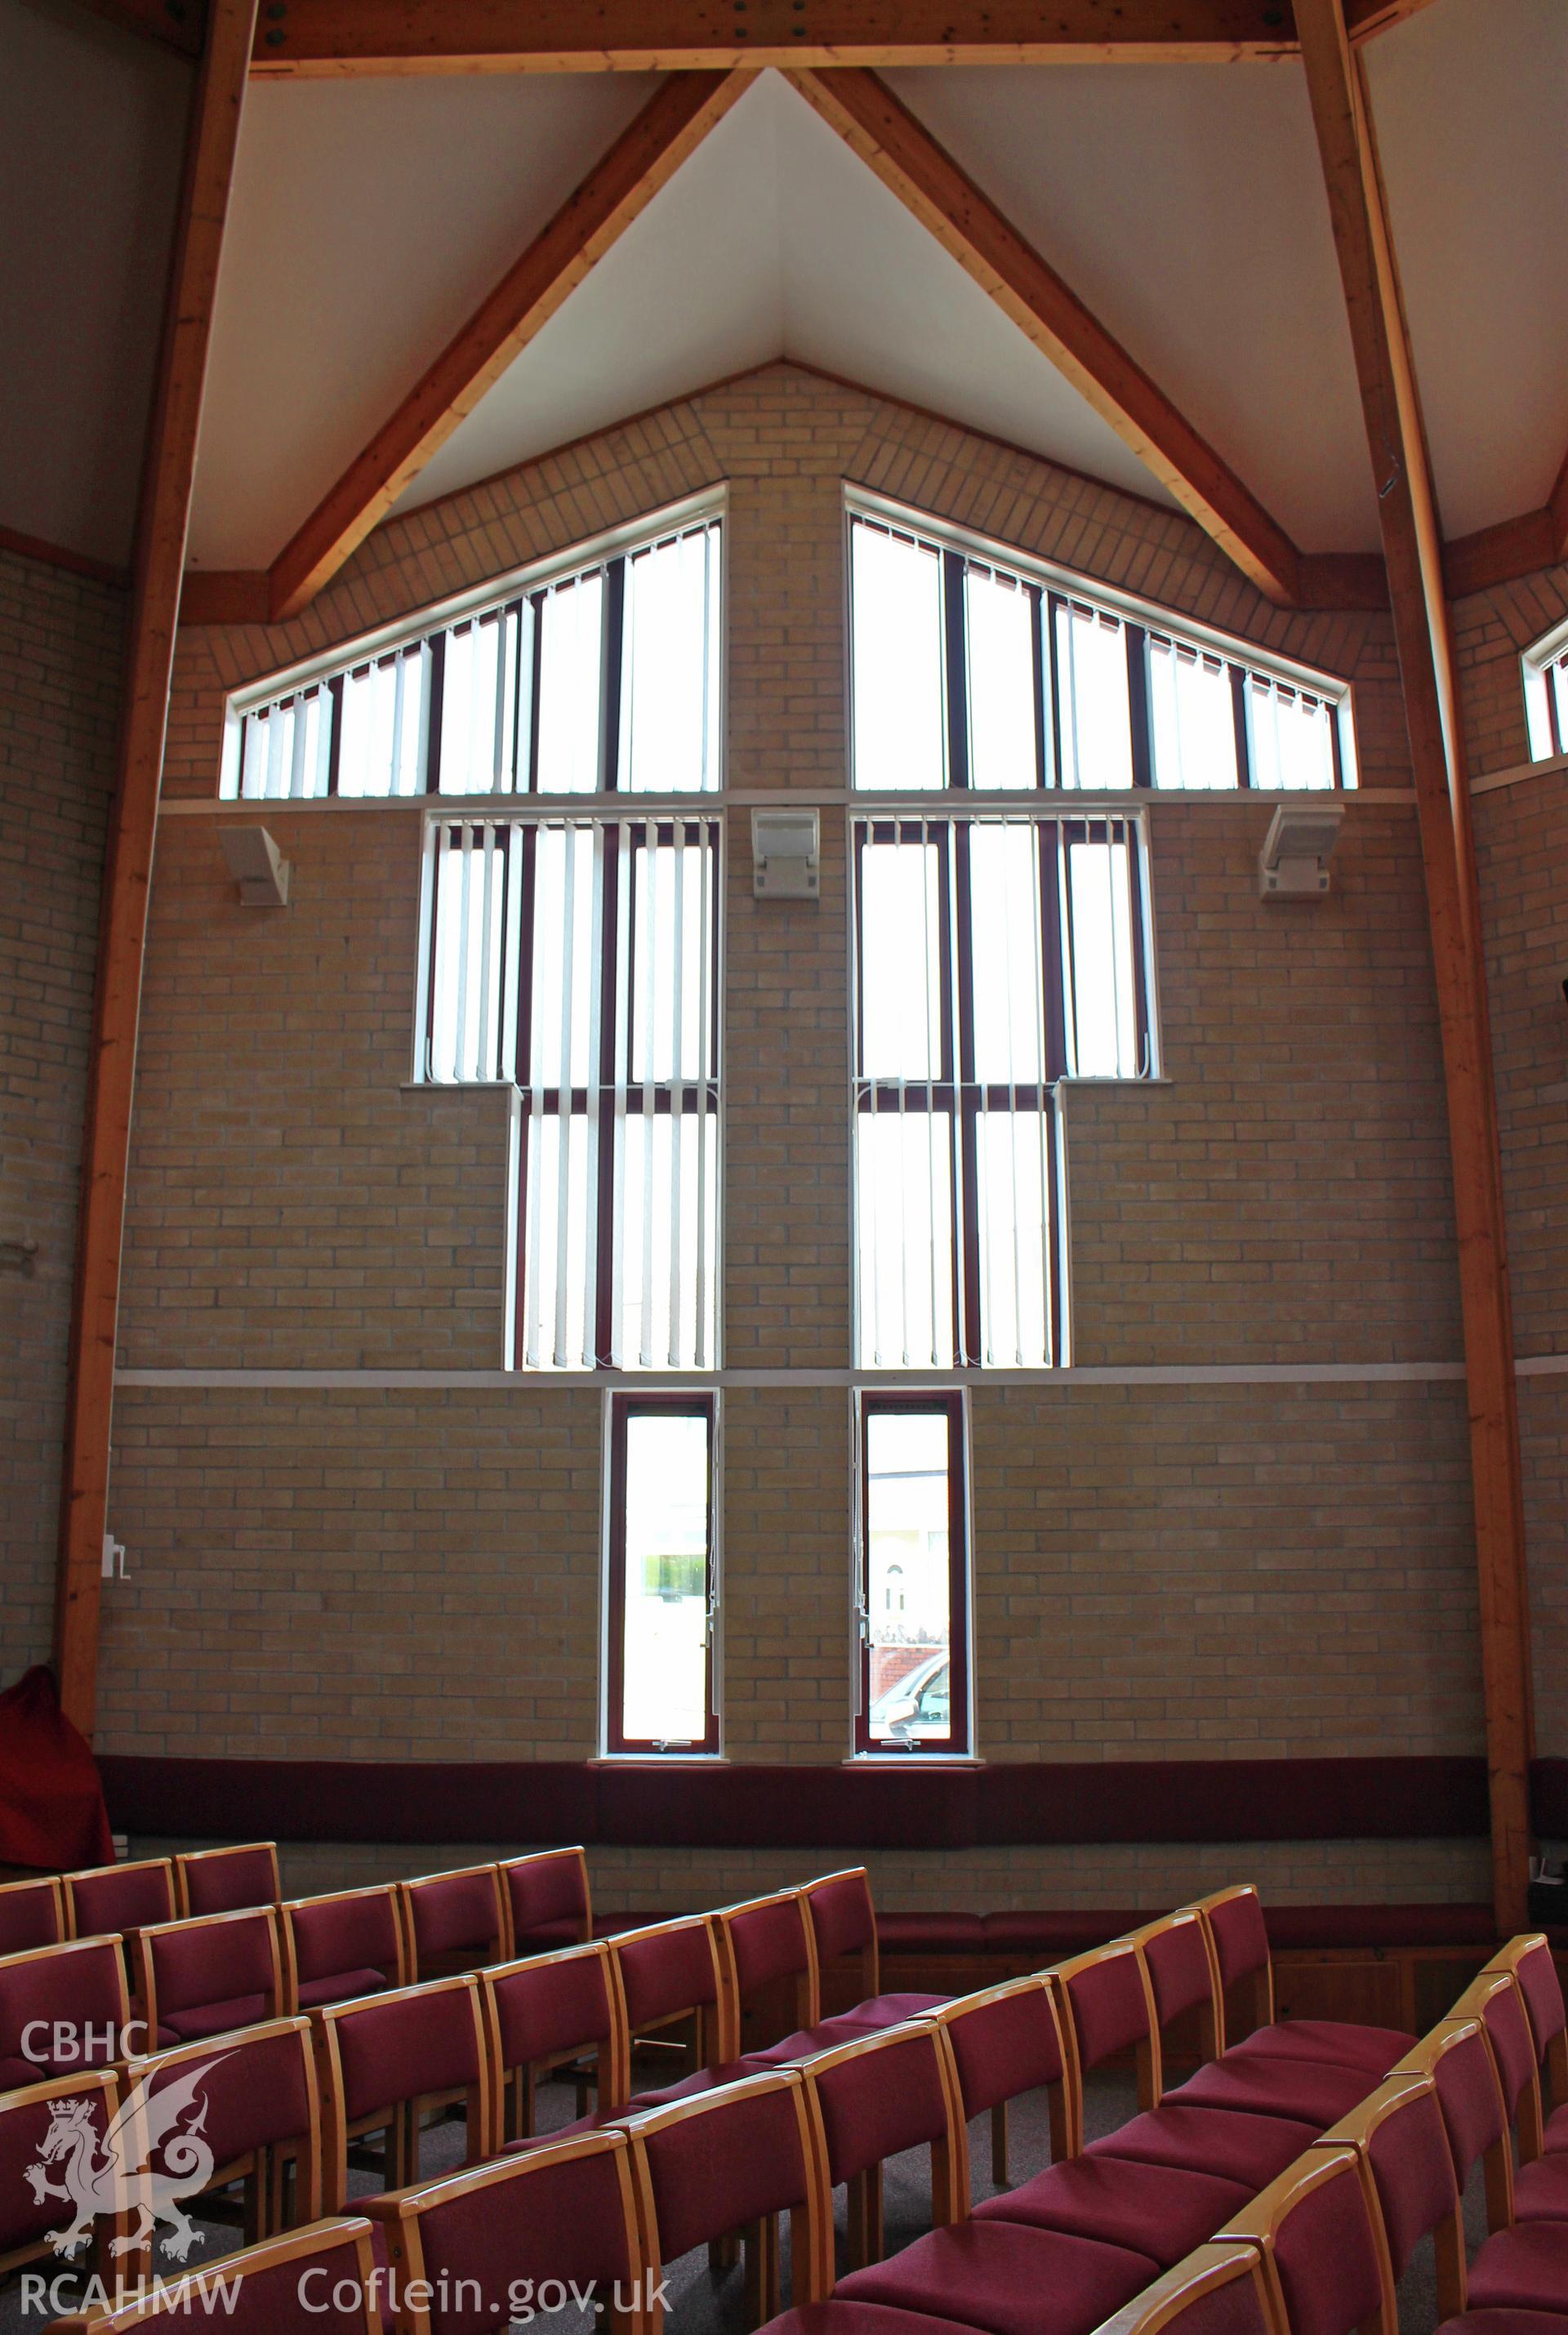 Manselton URC Chapel, Swansea, detail of east window